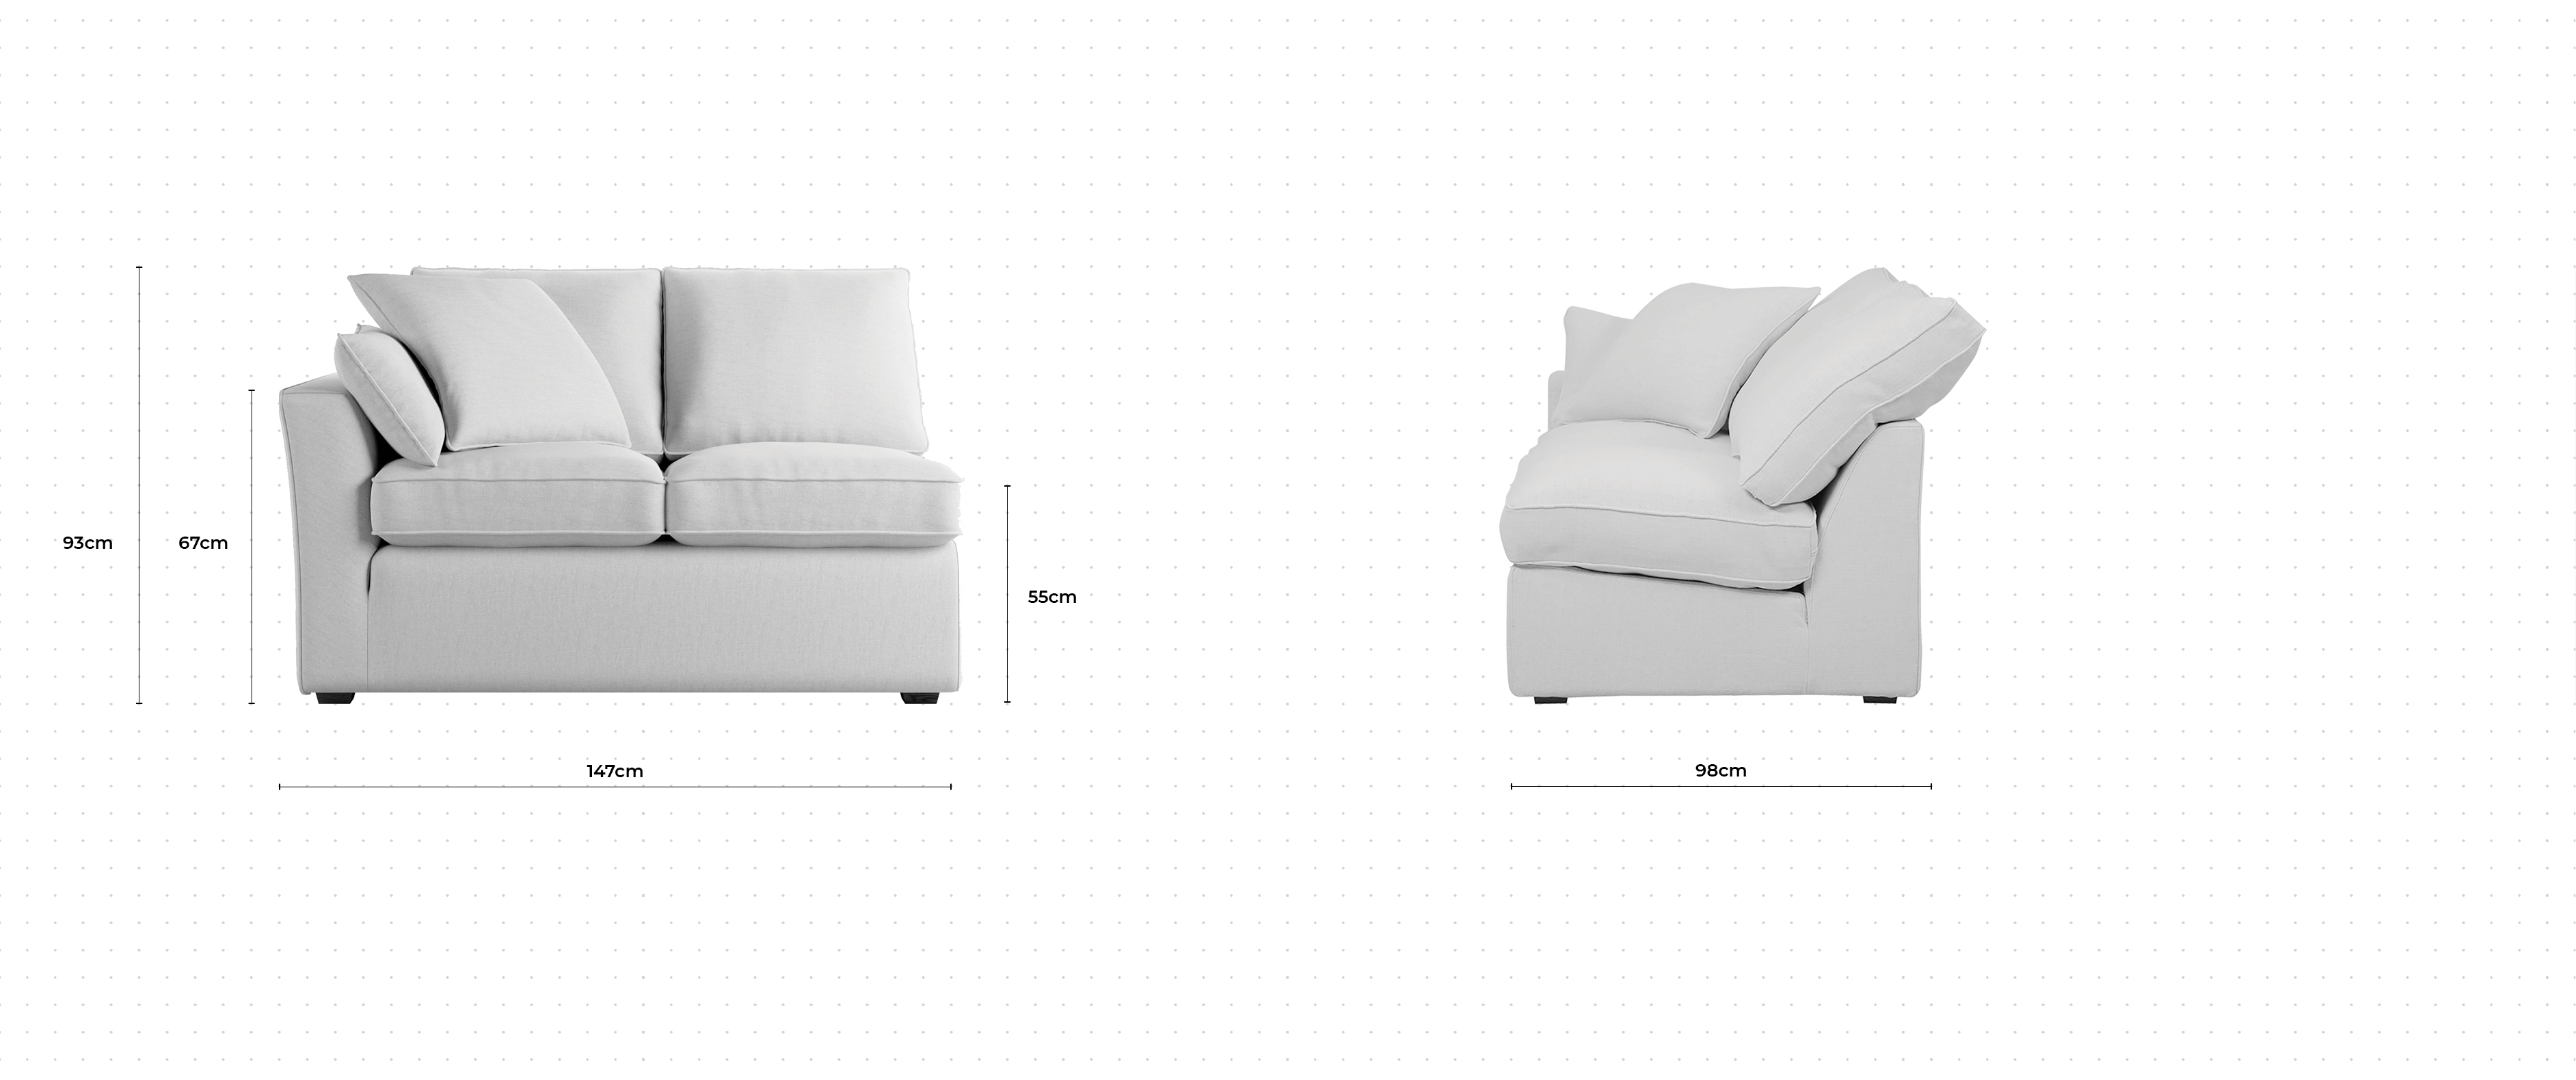 Caruso 2 Seater Sofa LHF dimensions